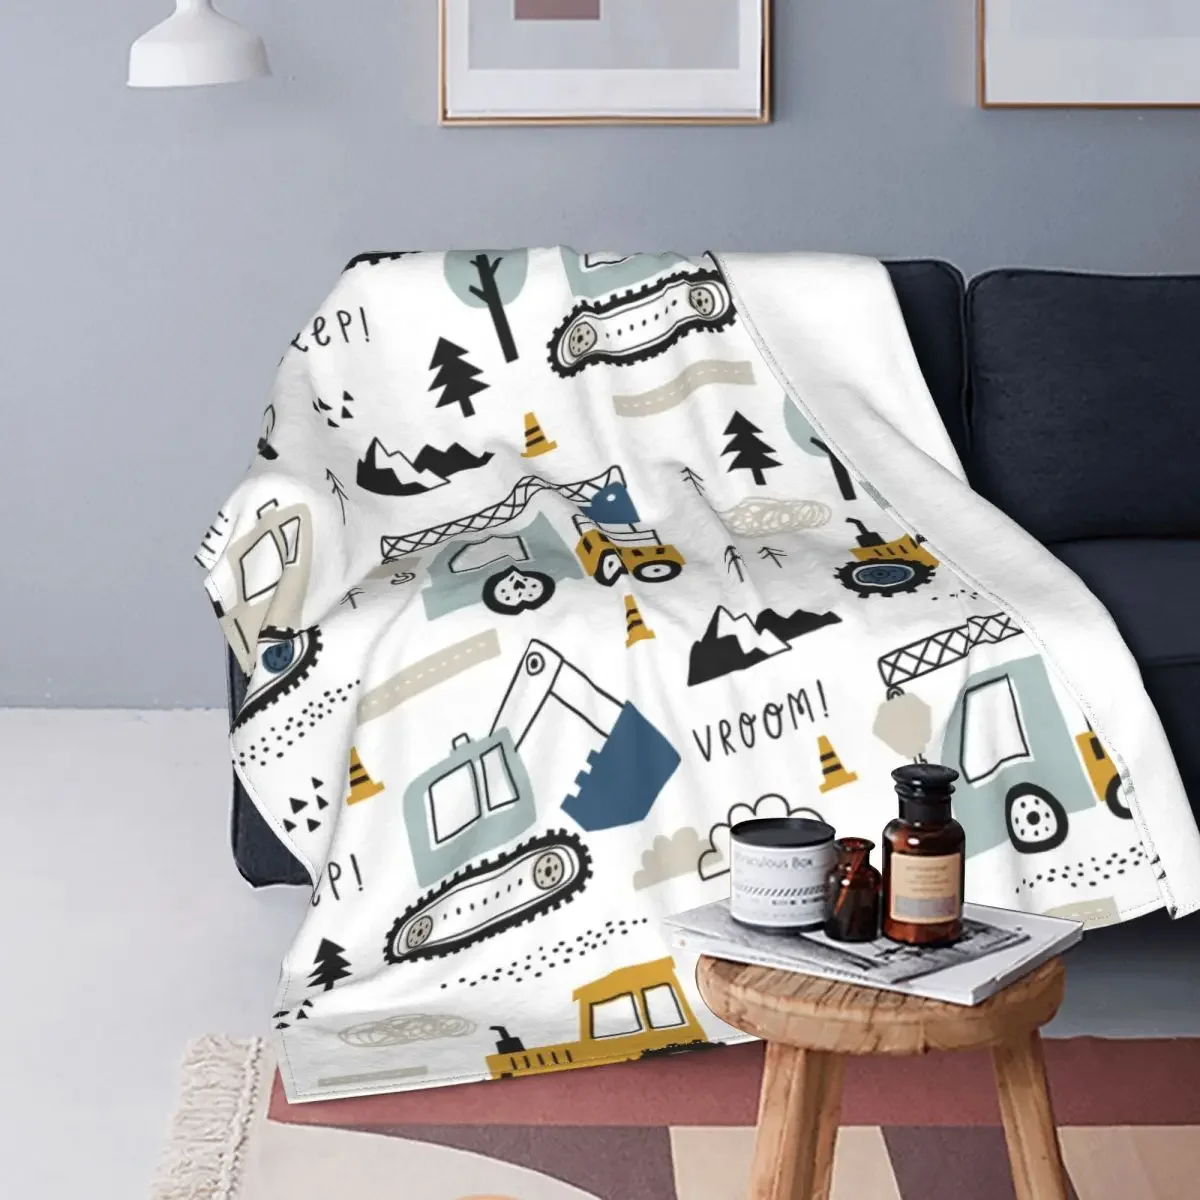 

Cartoon Truck Excavator Blanket Fleece Print Backhoe Cranes Equipment Portable Soft Throw Blanket for Bed Bedroom Rug Piece